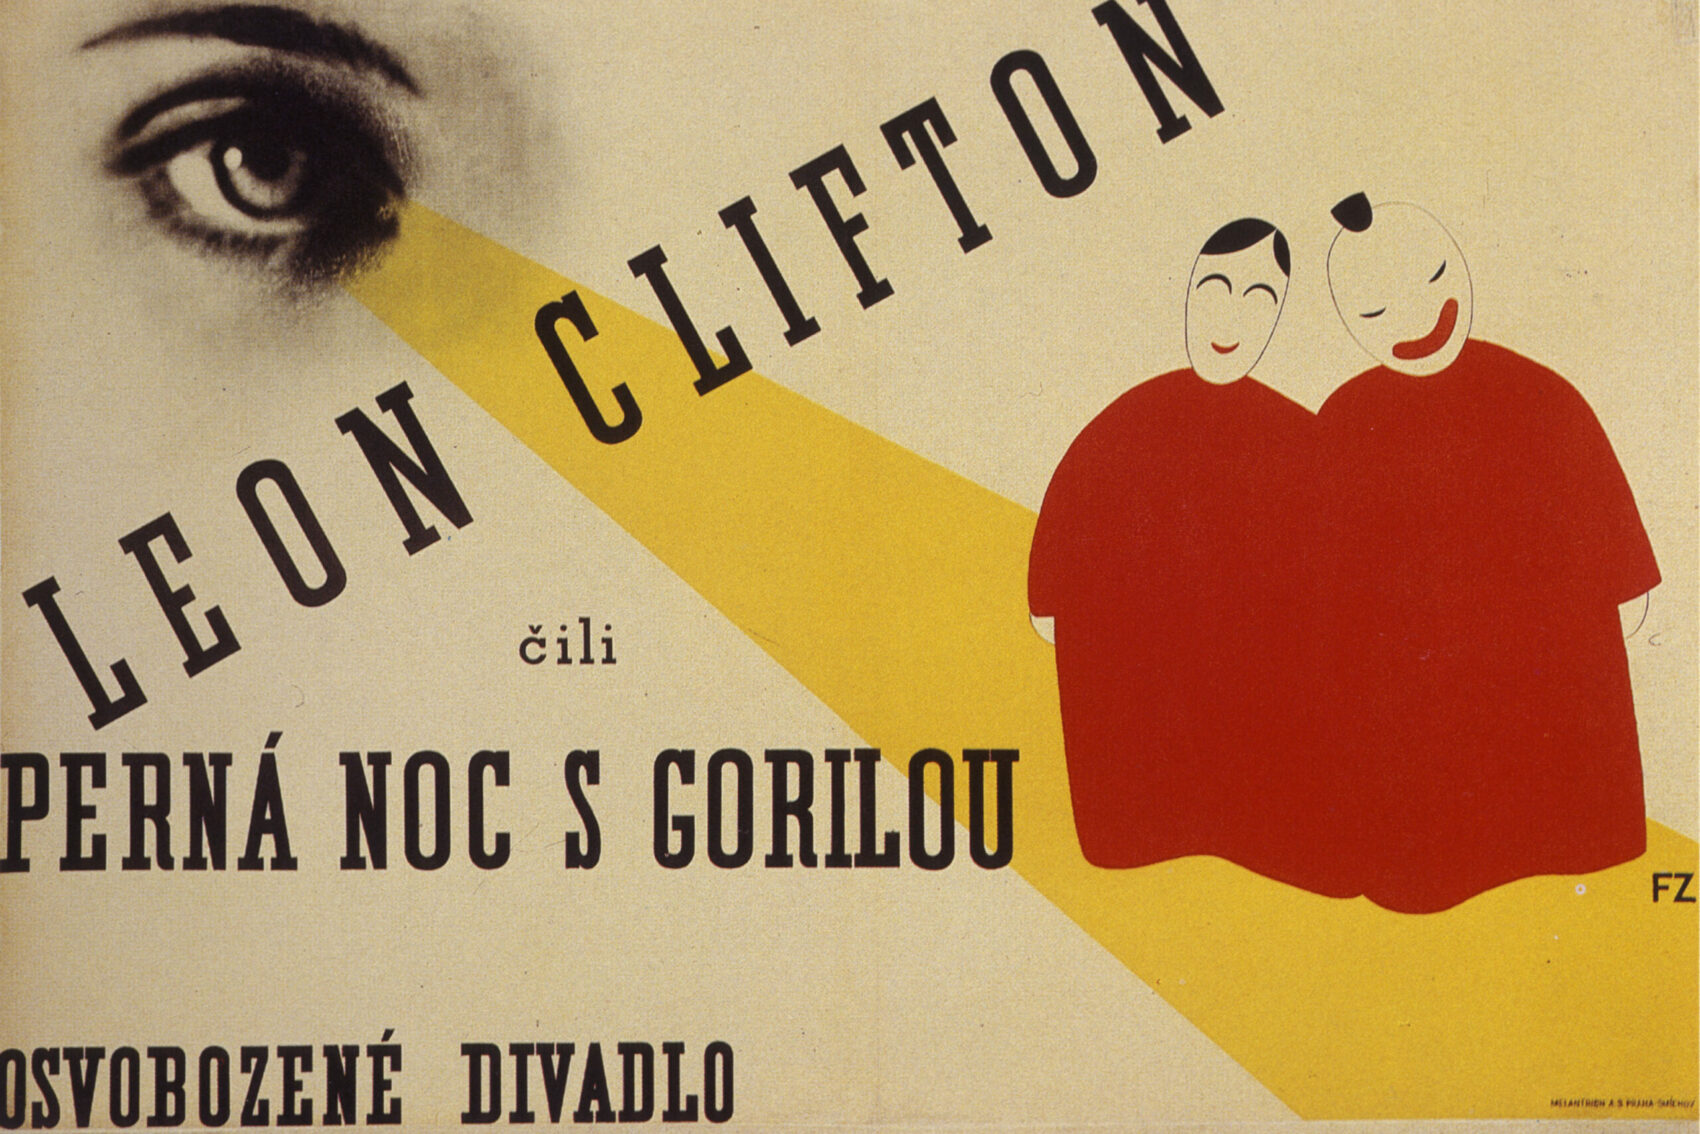 Frantisek_Zelenka: Leon Clifton,1928